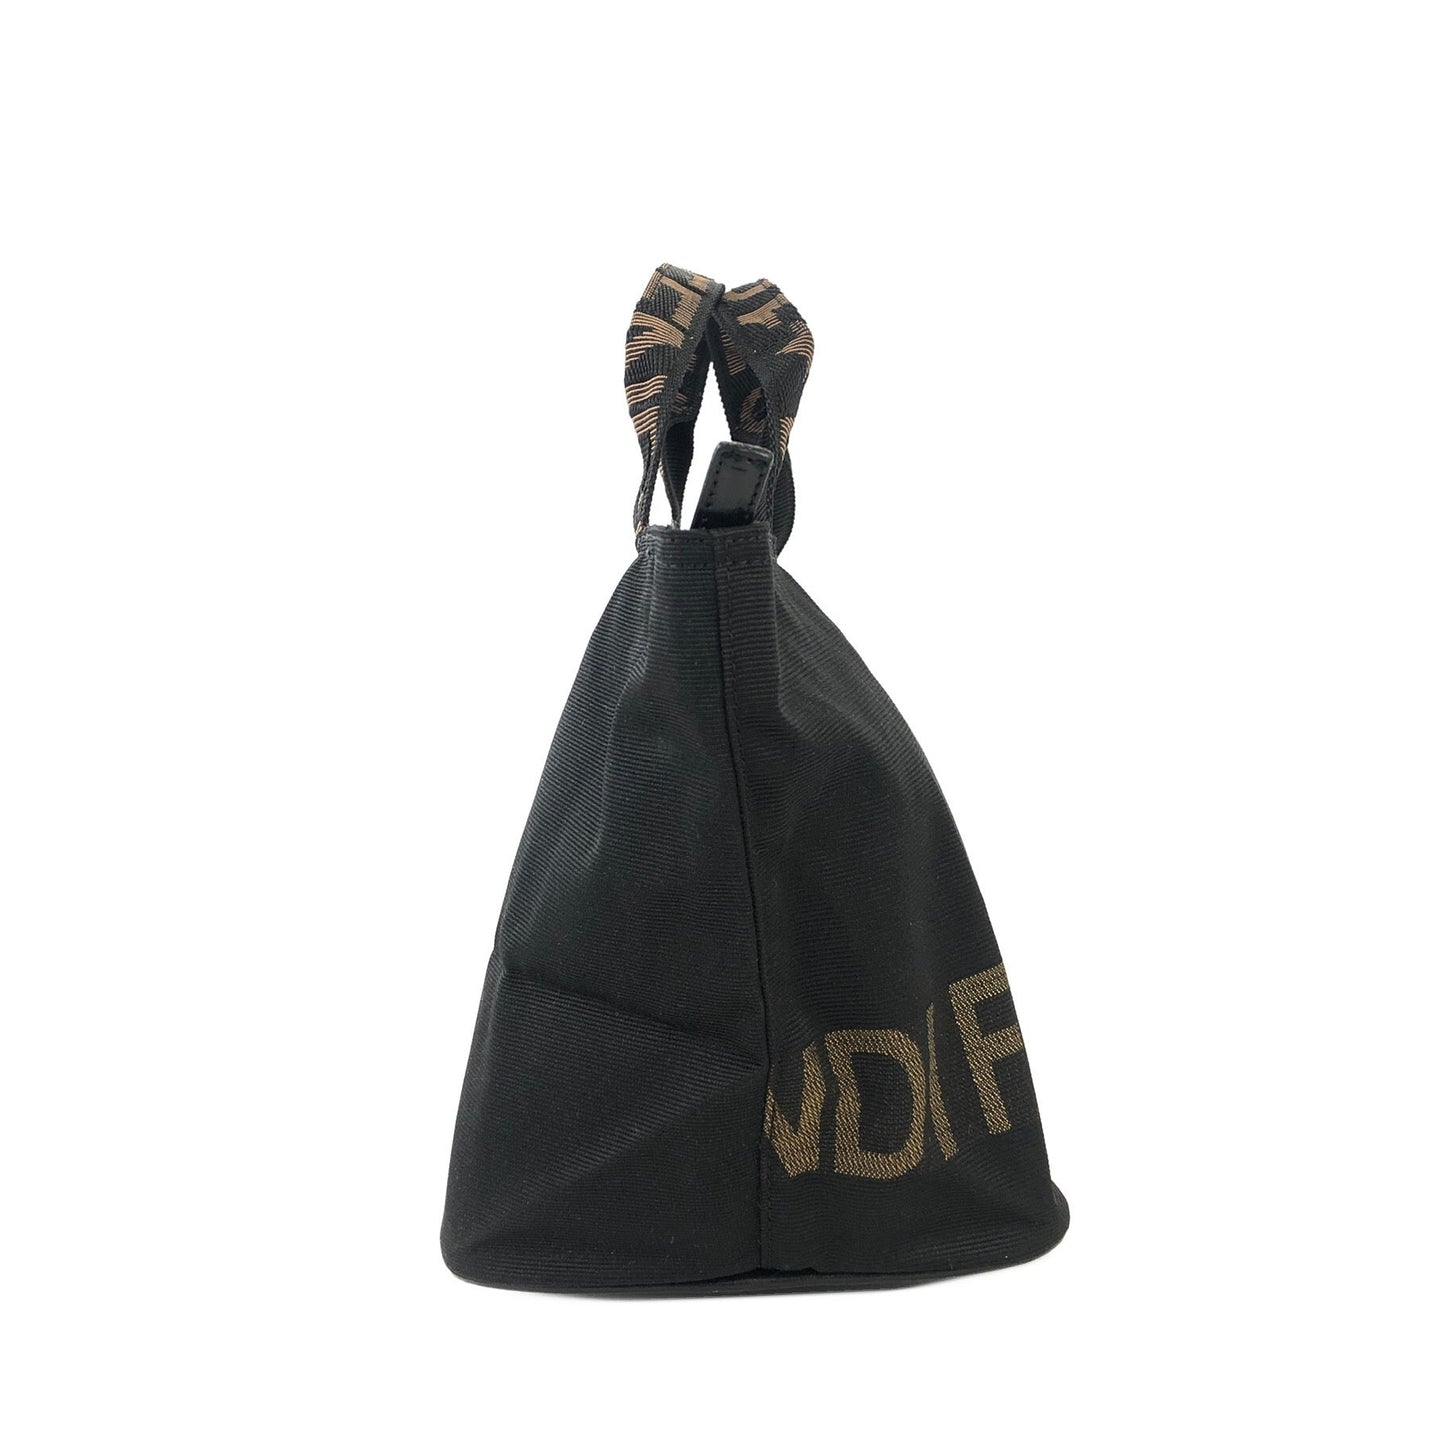 FENDI Logo Nylon Mini Totebag Handbag Black Old Vintage 6zau6e